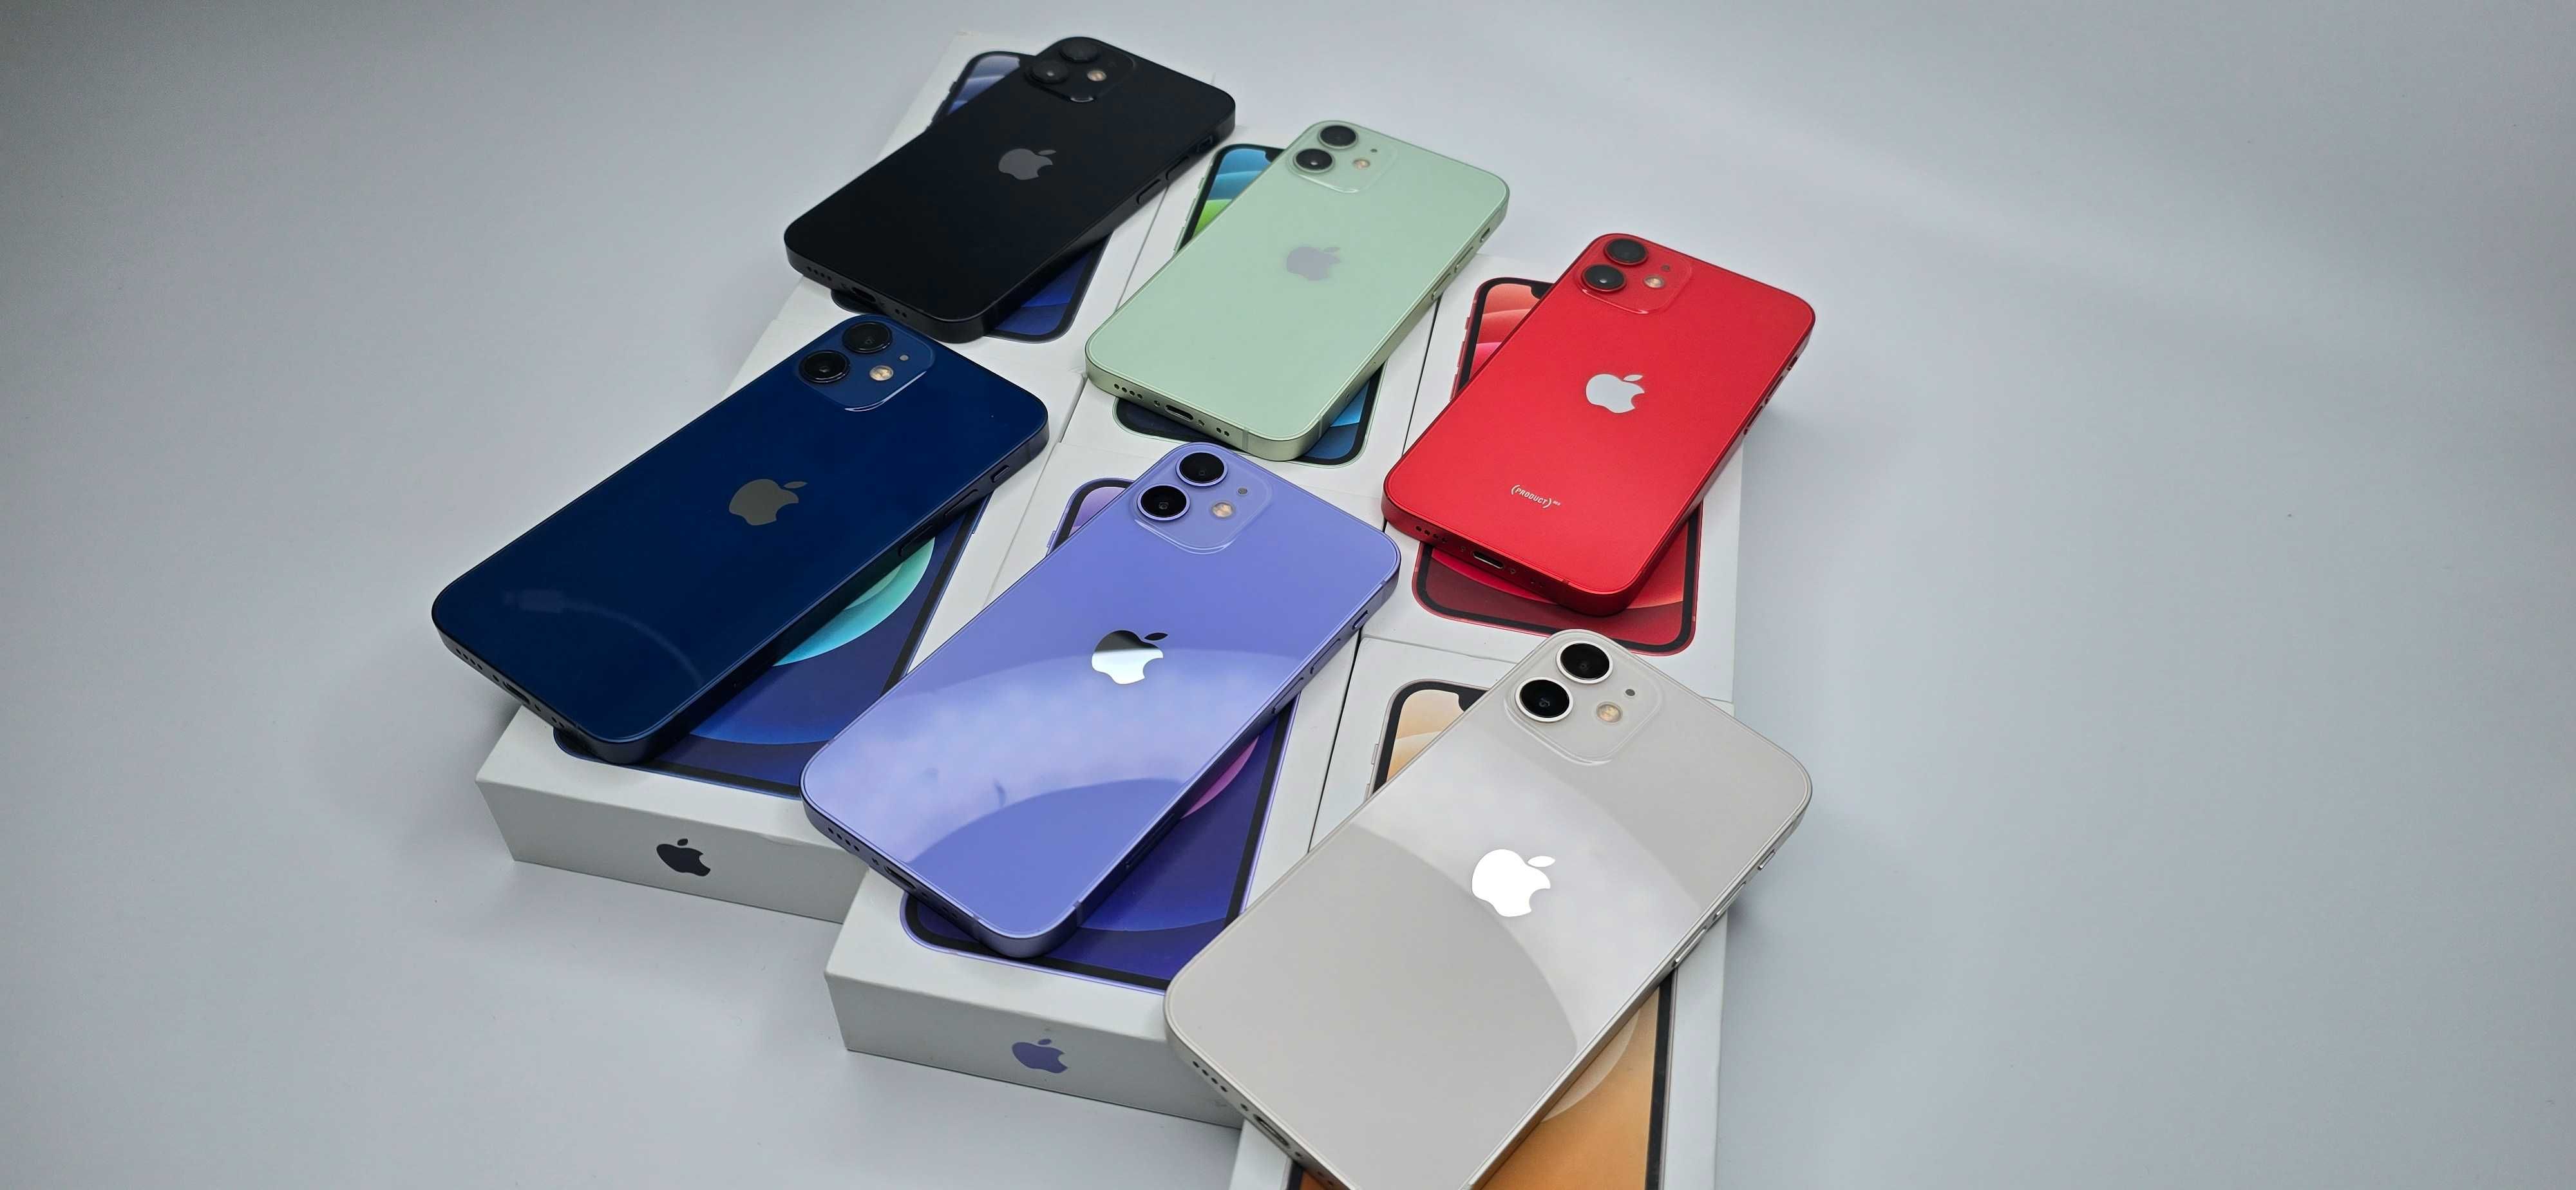 iPhone 12 mini 64gb  komplet, gwarancja, sklep , 6 kolorów